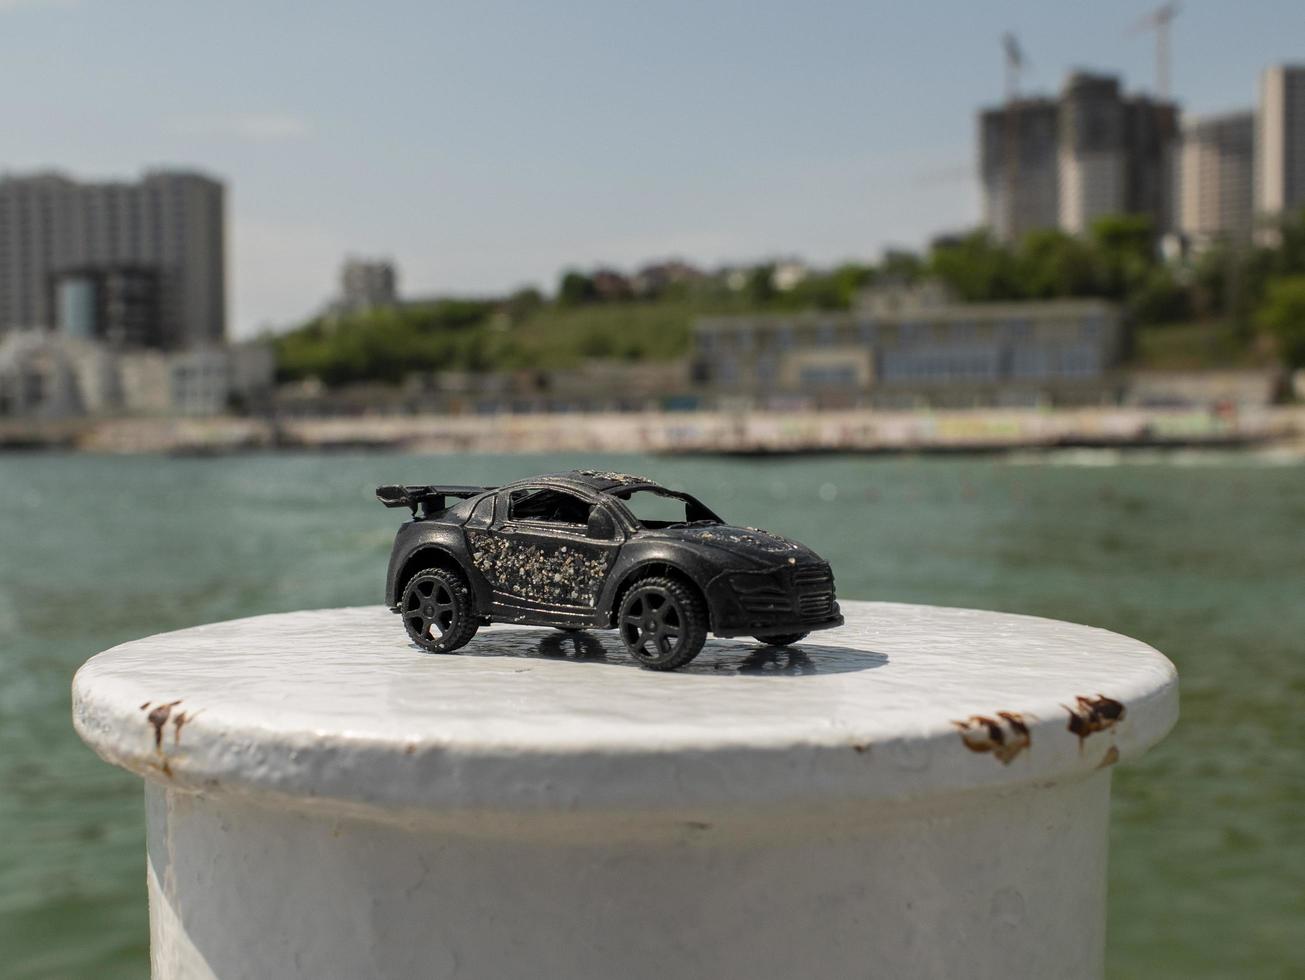 Spielzeugautomodell in Schwarz vor dem Hintergrund des Meeres und der Hochhäuser foto